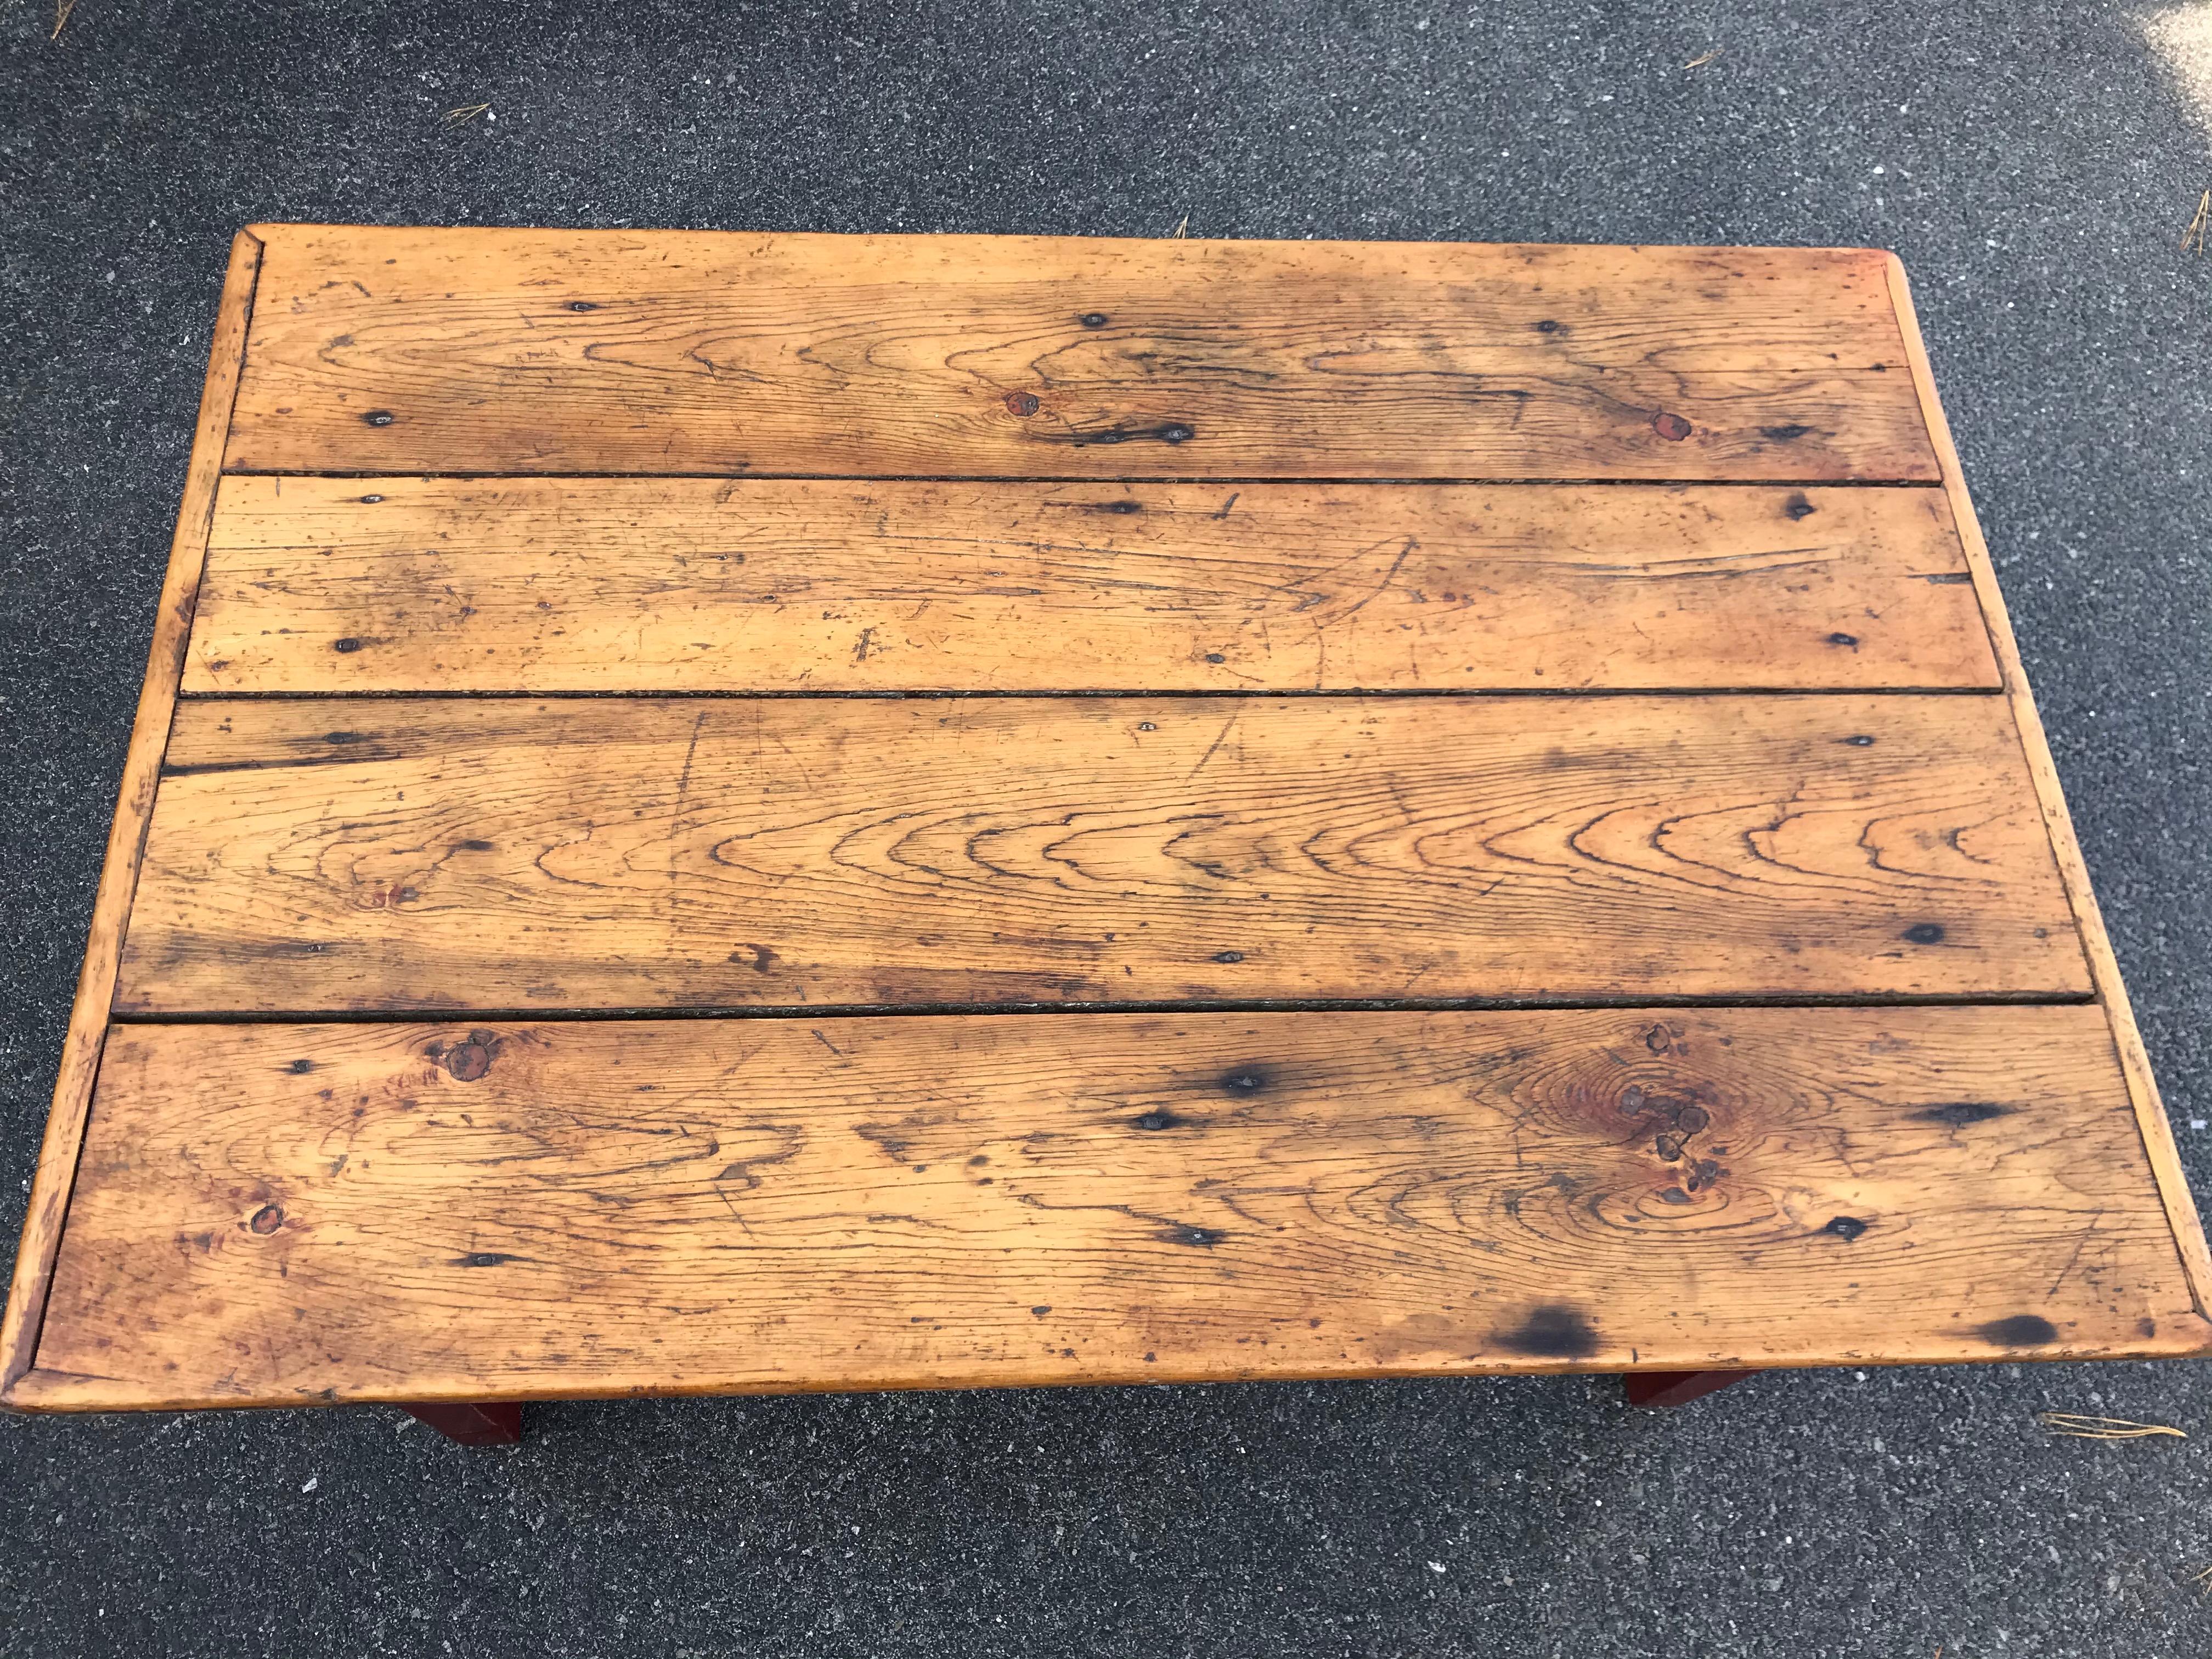 Jolie table du 19ème siècle réduite à la hauteur d'une table basse. Avec un plateau de quatre planches en finition naturelle et une base peinte en rouge. Canada, probablement Terre-Neuve.